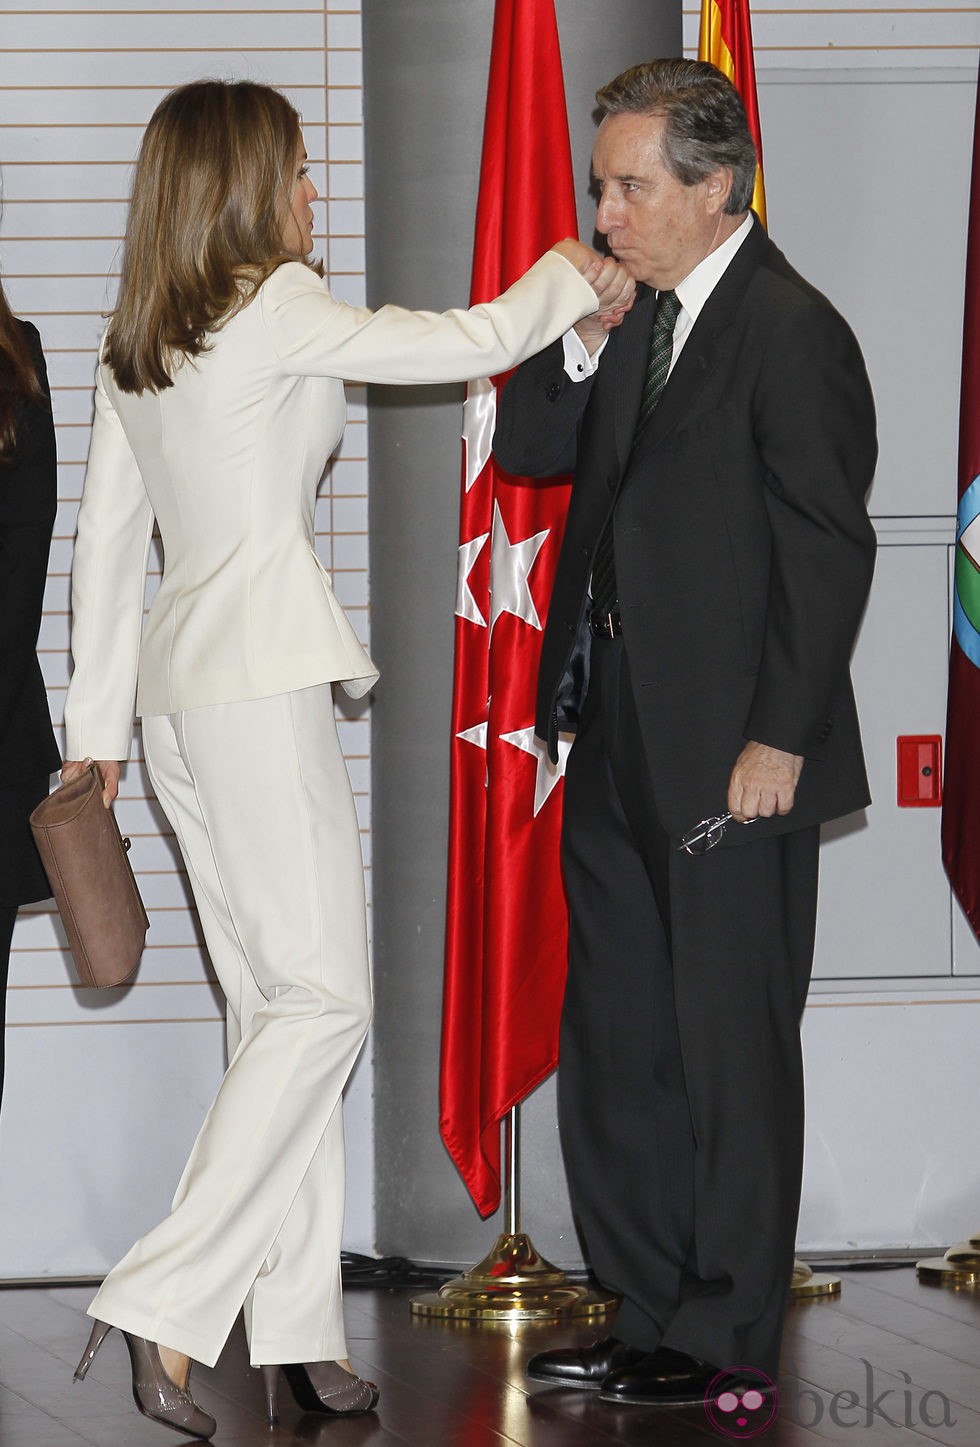 Iñaki Gabilondo besa la mano de la Princesa Letizia